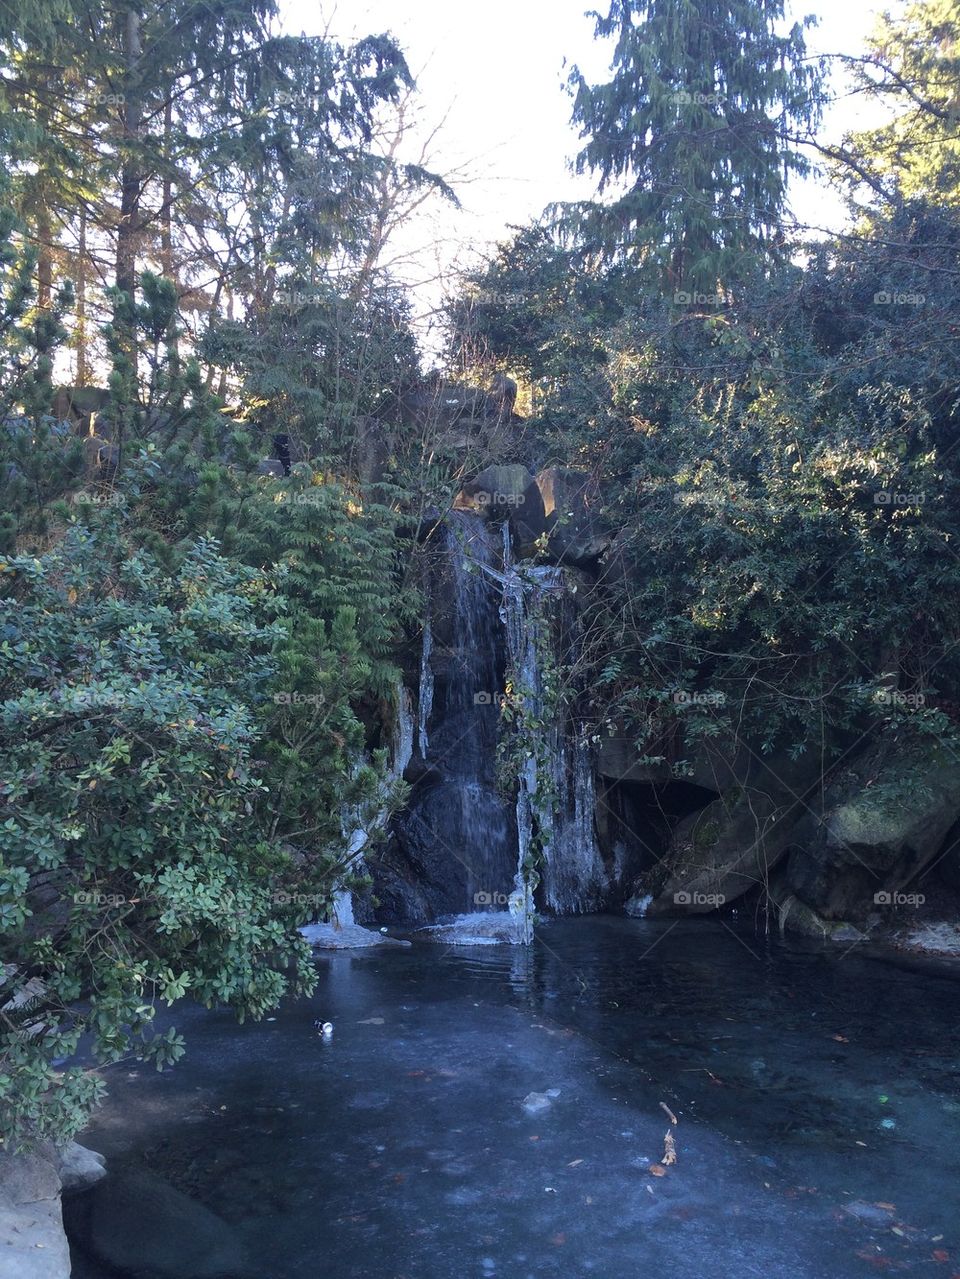 Waterfall at Charleson